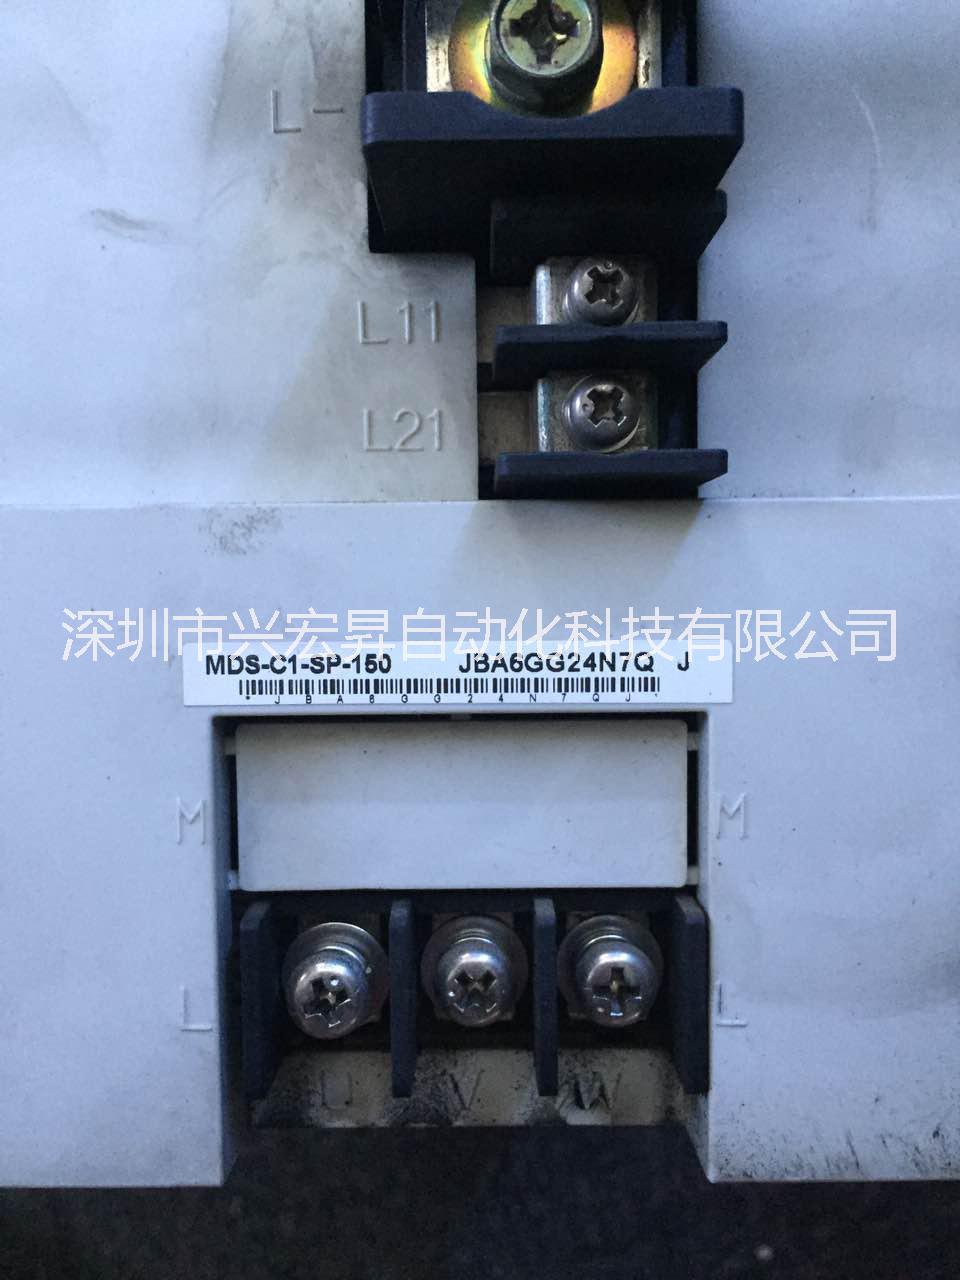 深圳市三菱MDS-C1-SP-150主轴放大器维修厂家